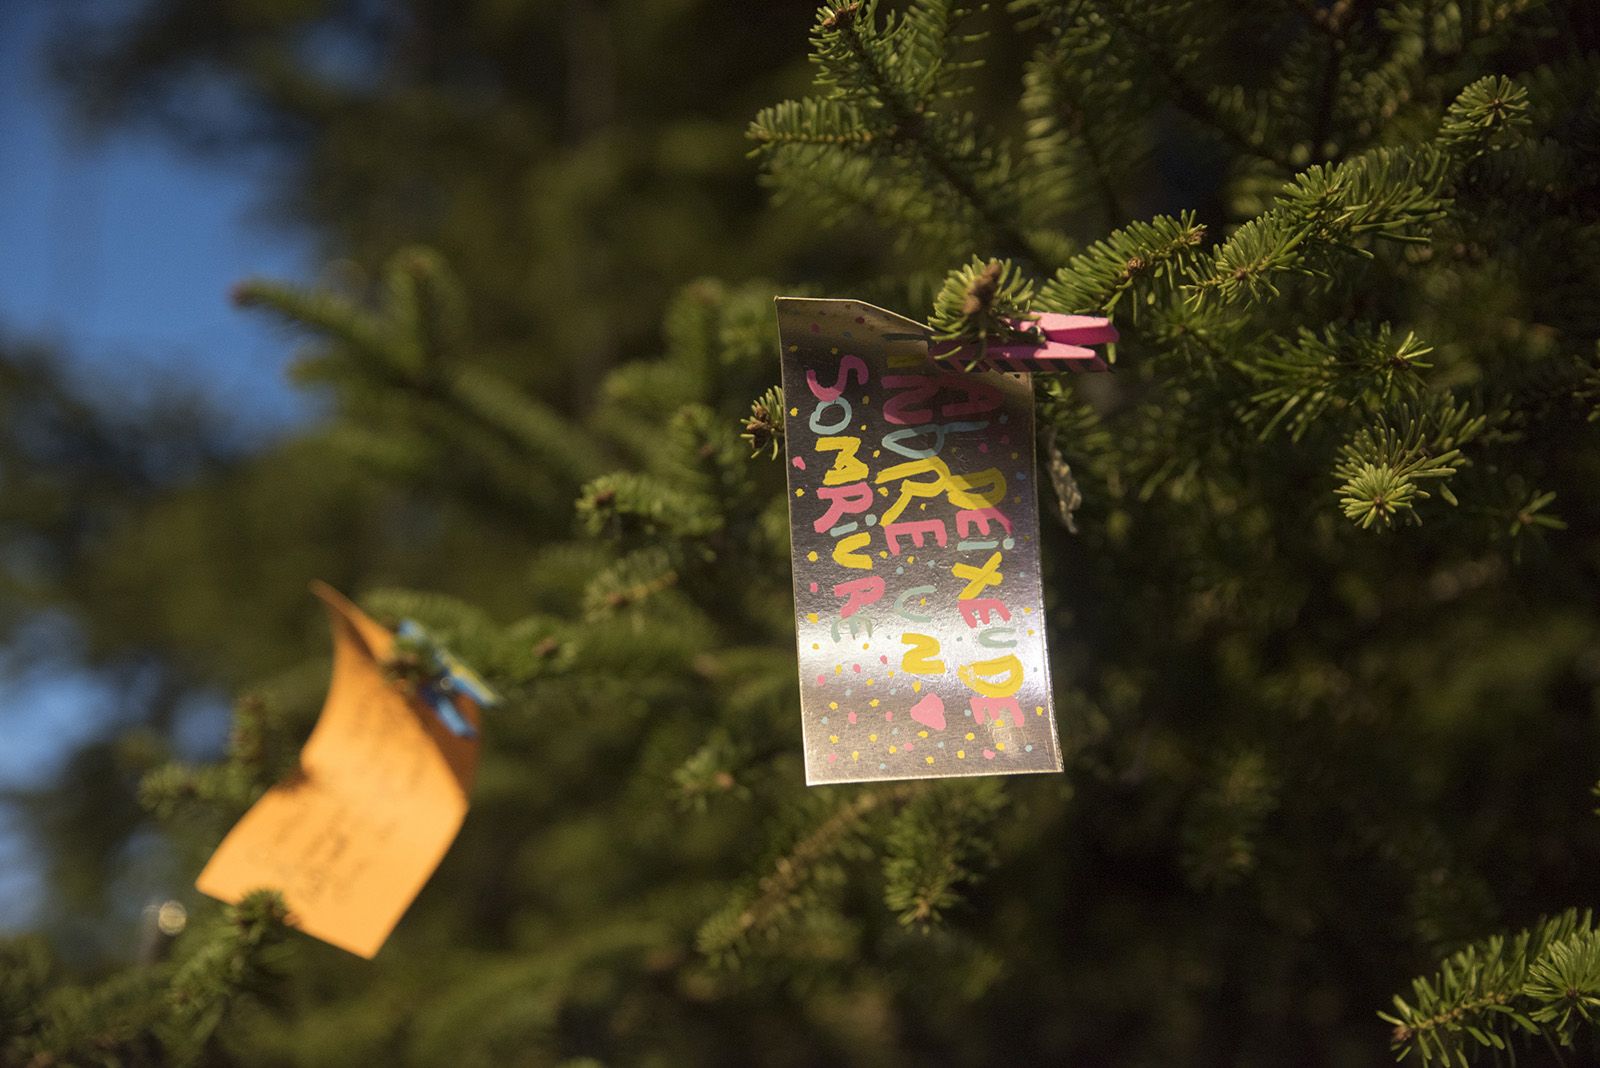 Encesa de l'arbre de Nadal de Valldoreix. FOTO: Bernat Millet.